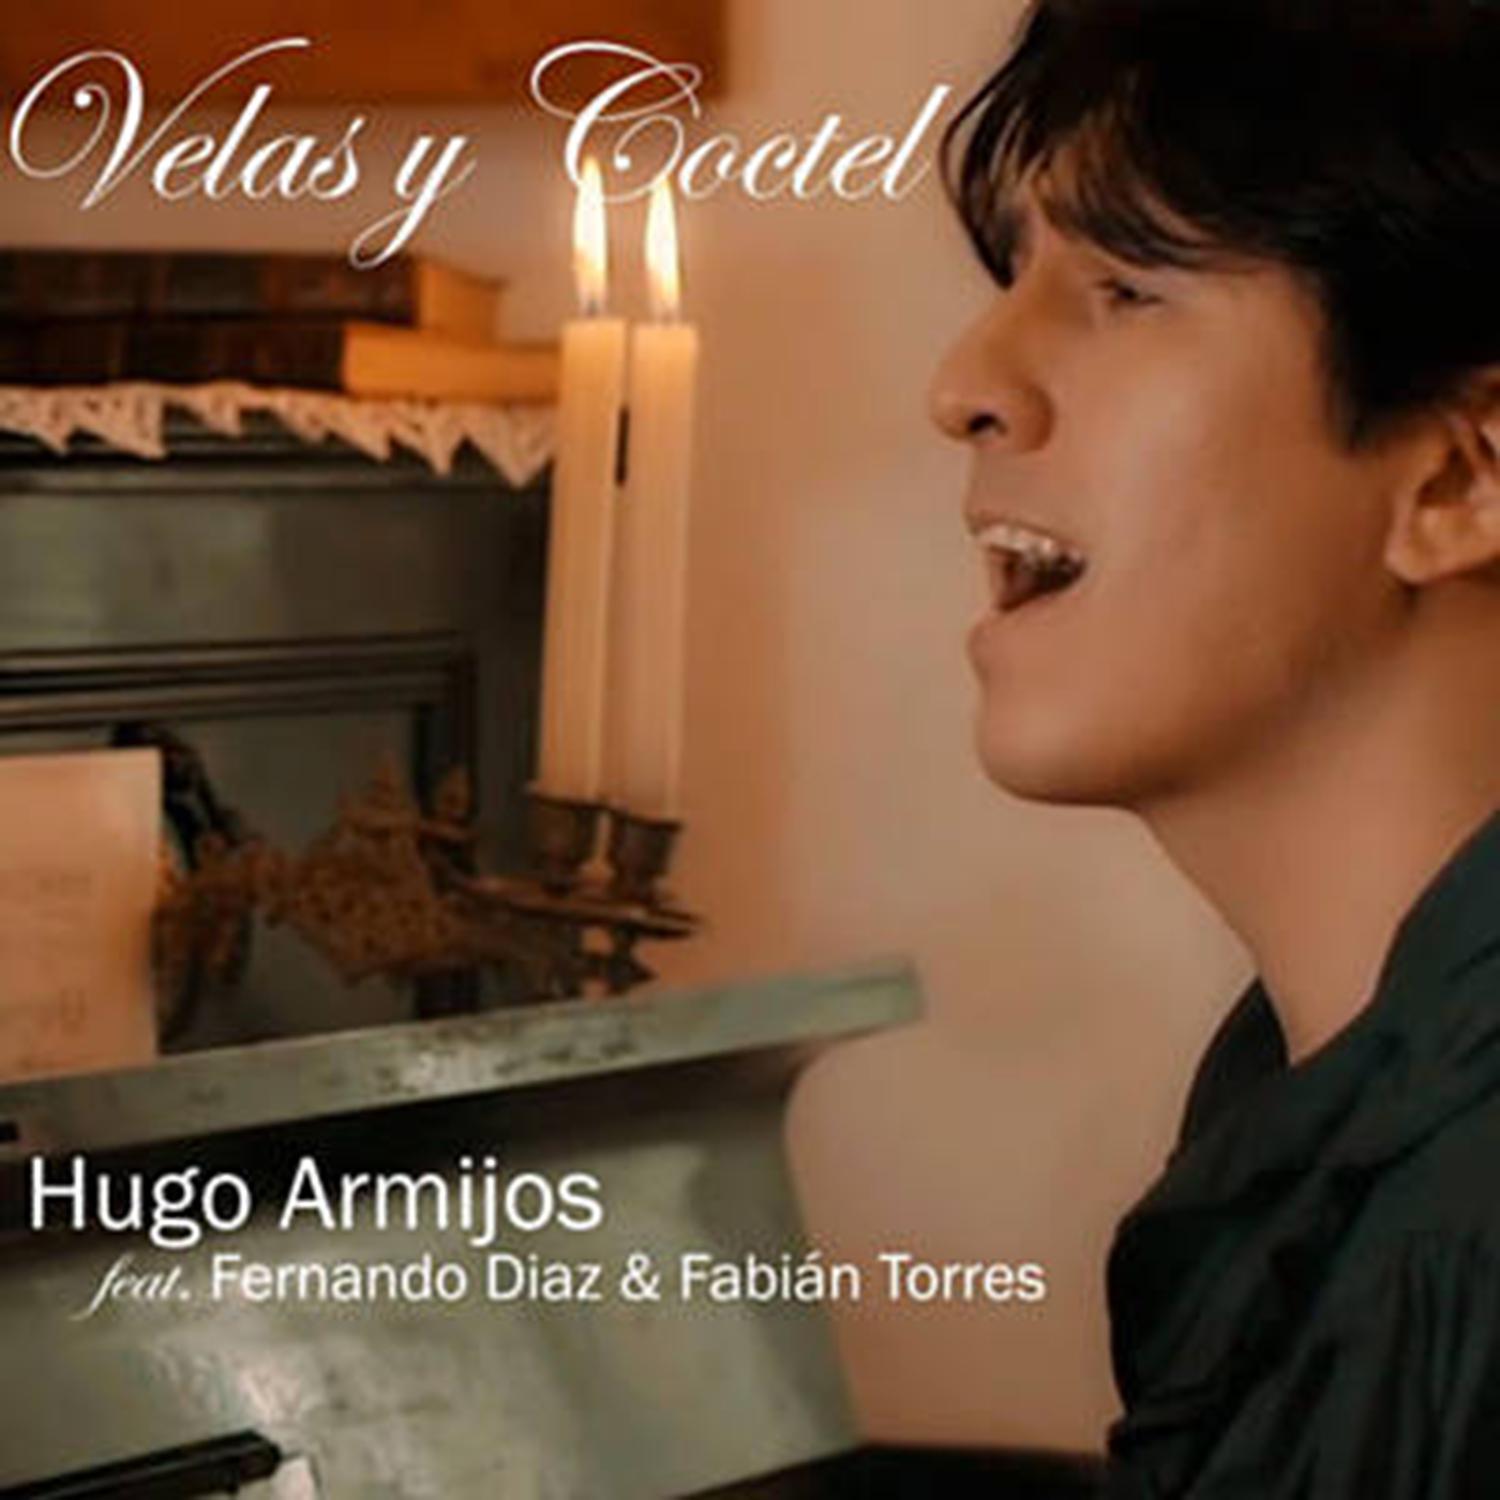 Hugo Armijos - Velas y Coctel